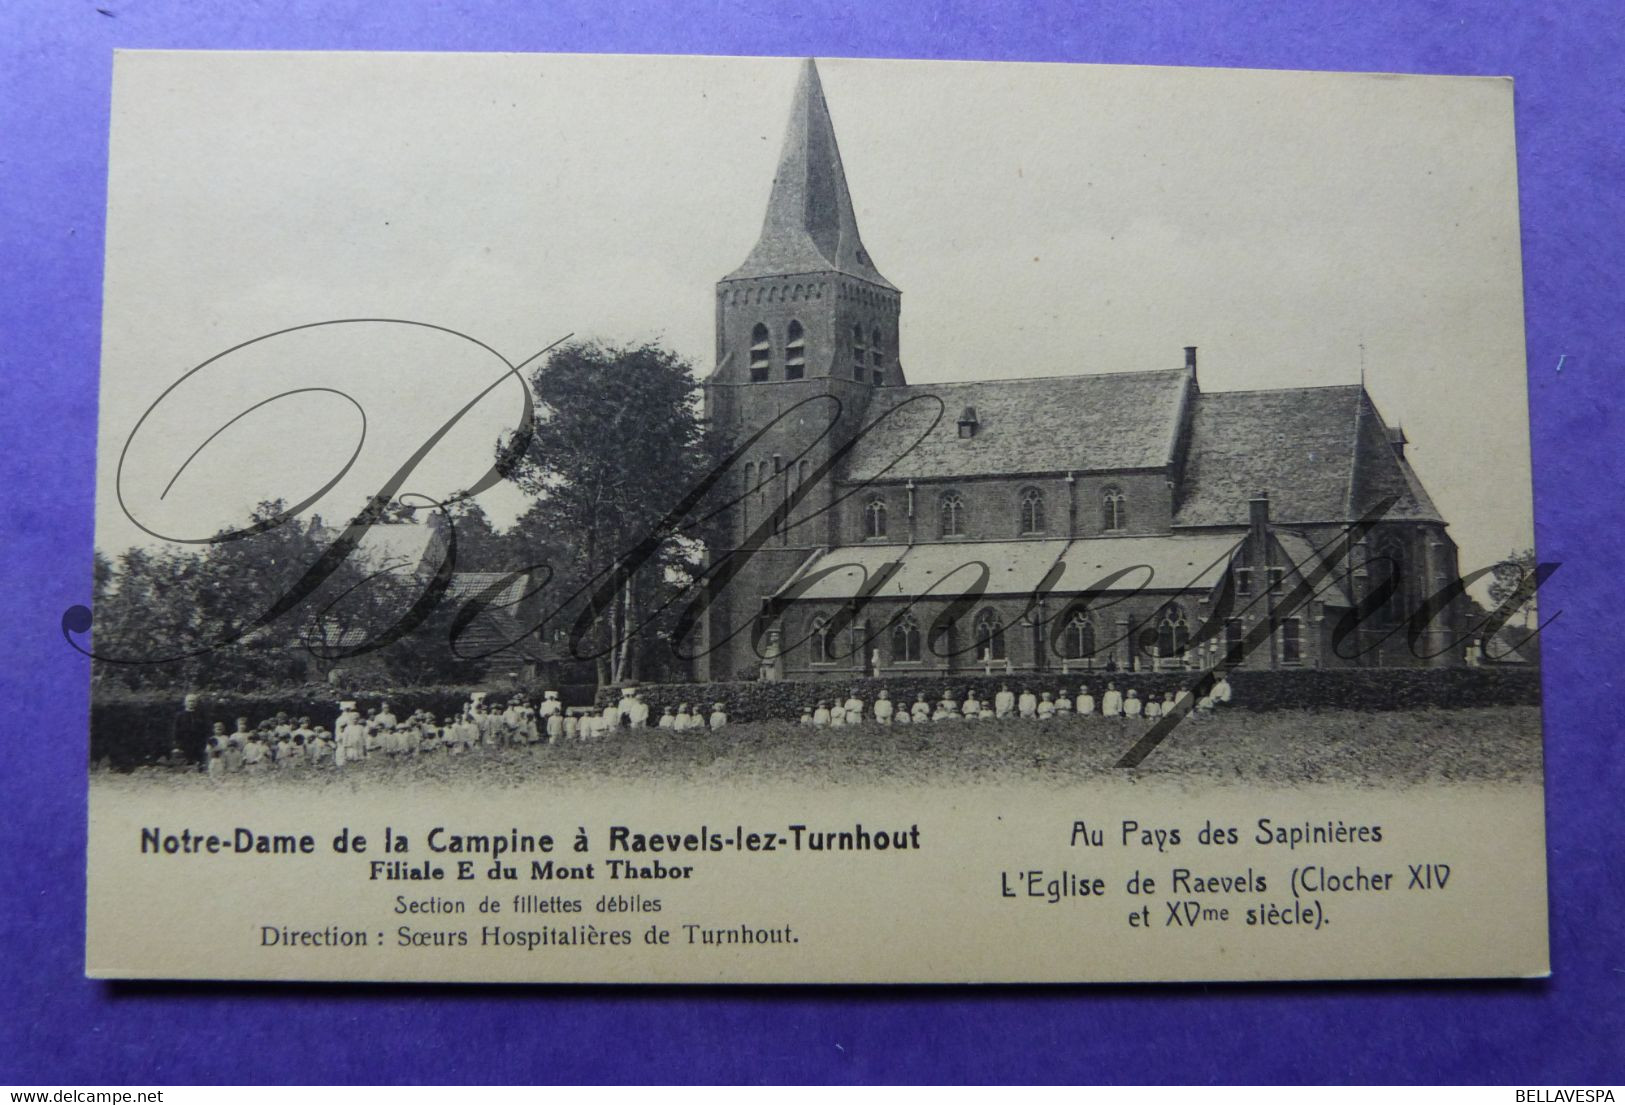 Ravels Notre -Dame de la Campine Filiale Mont Thabor.